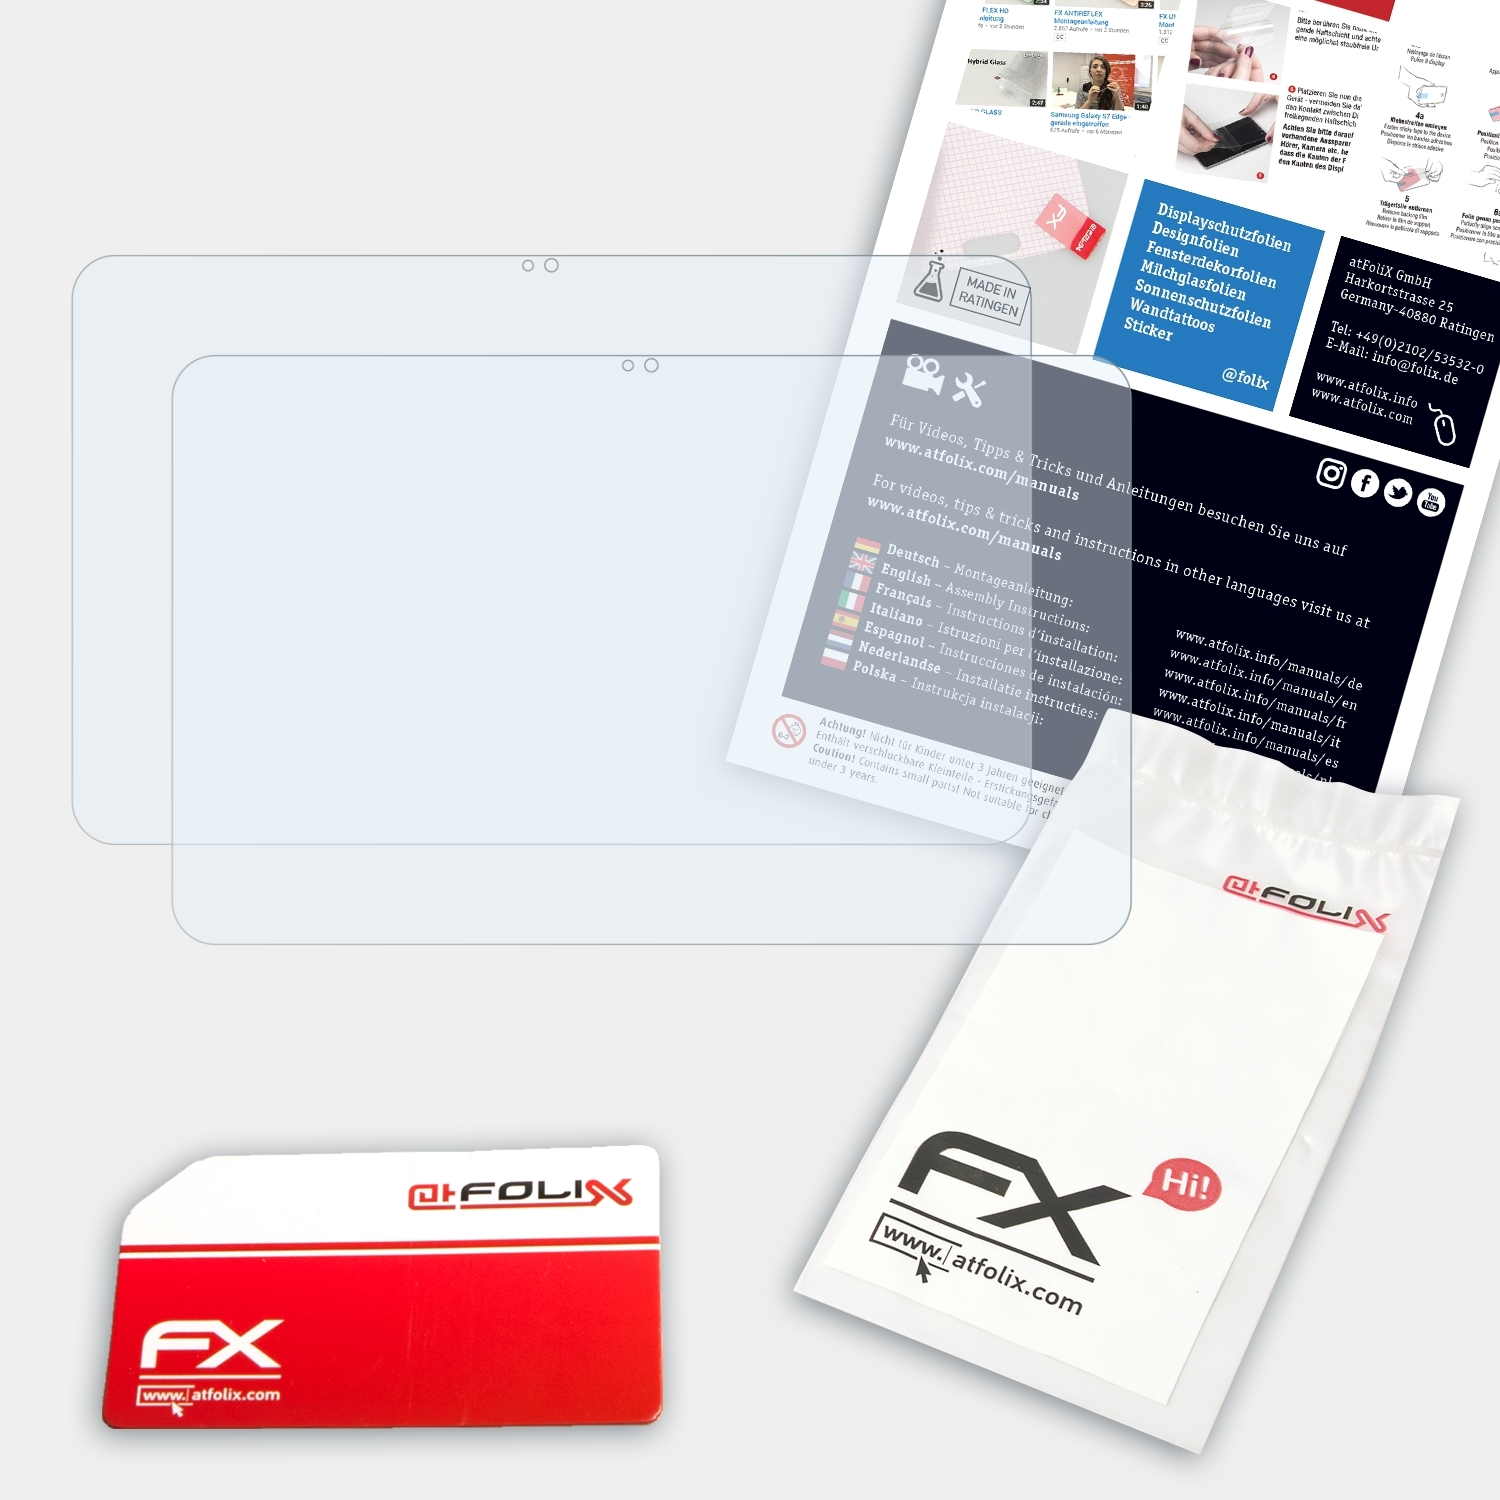 ATFOLIX 2x FX-Clear Displayschutz(für 13,3 Pavilion (2014)) x360 HP